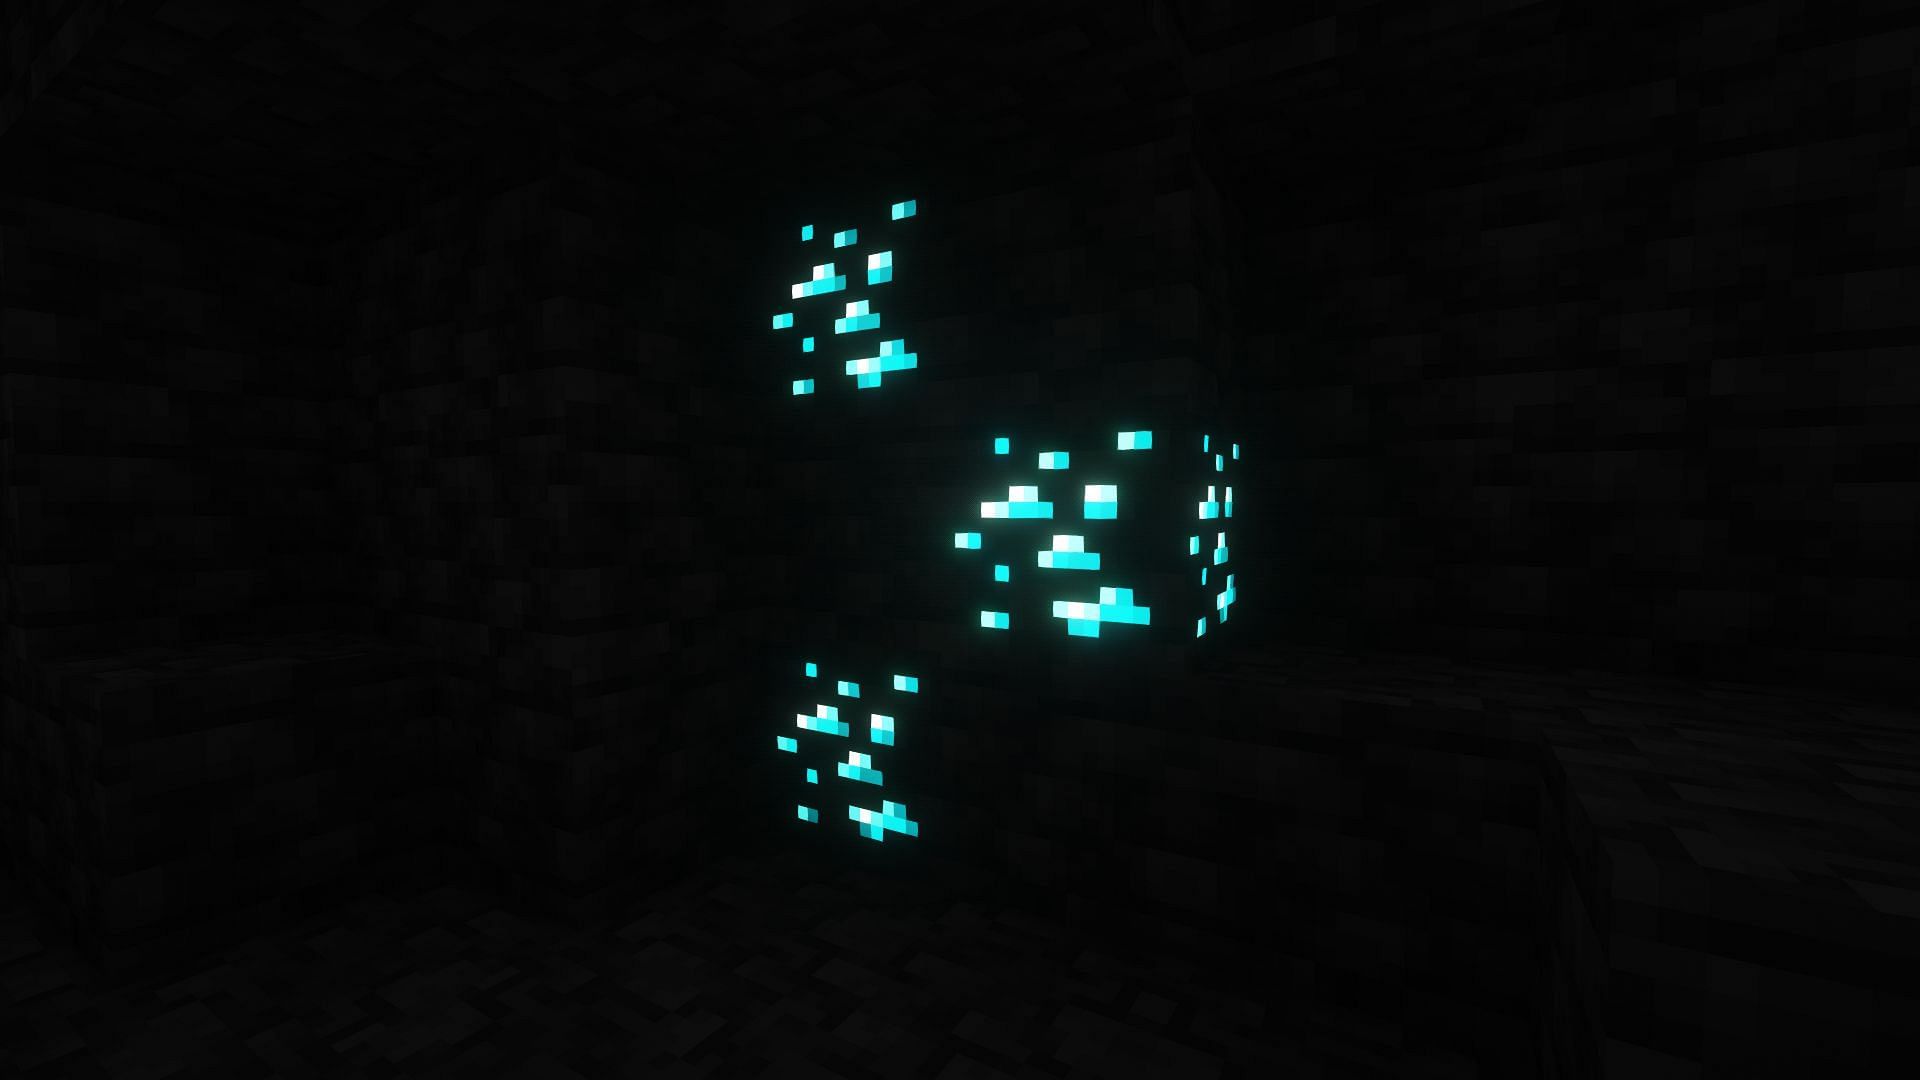 Diamond ores (Image via Minecraft)